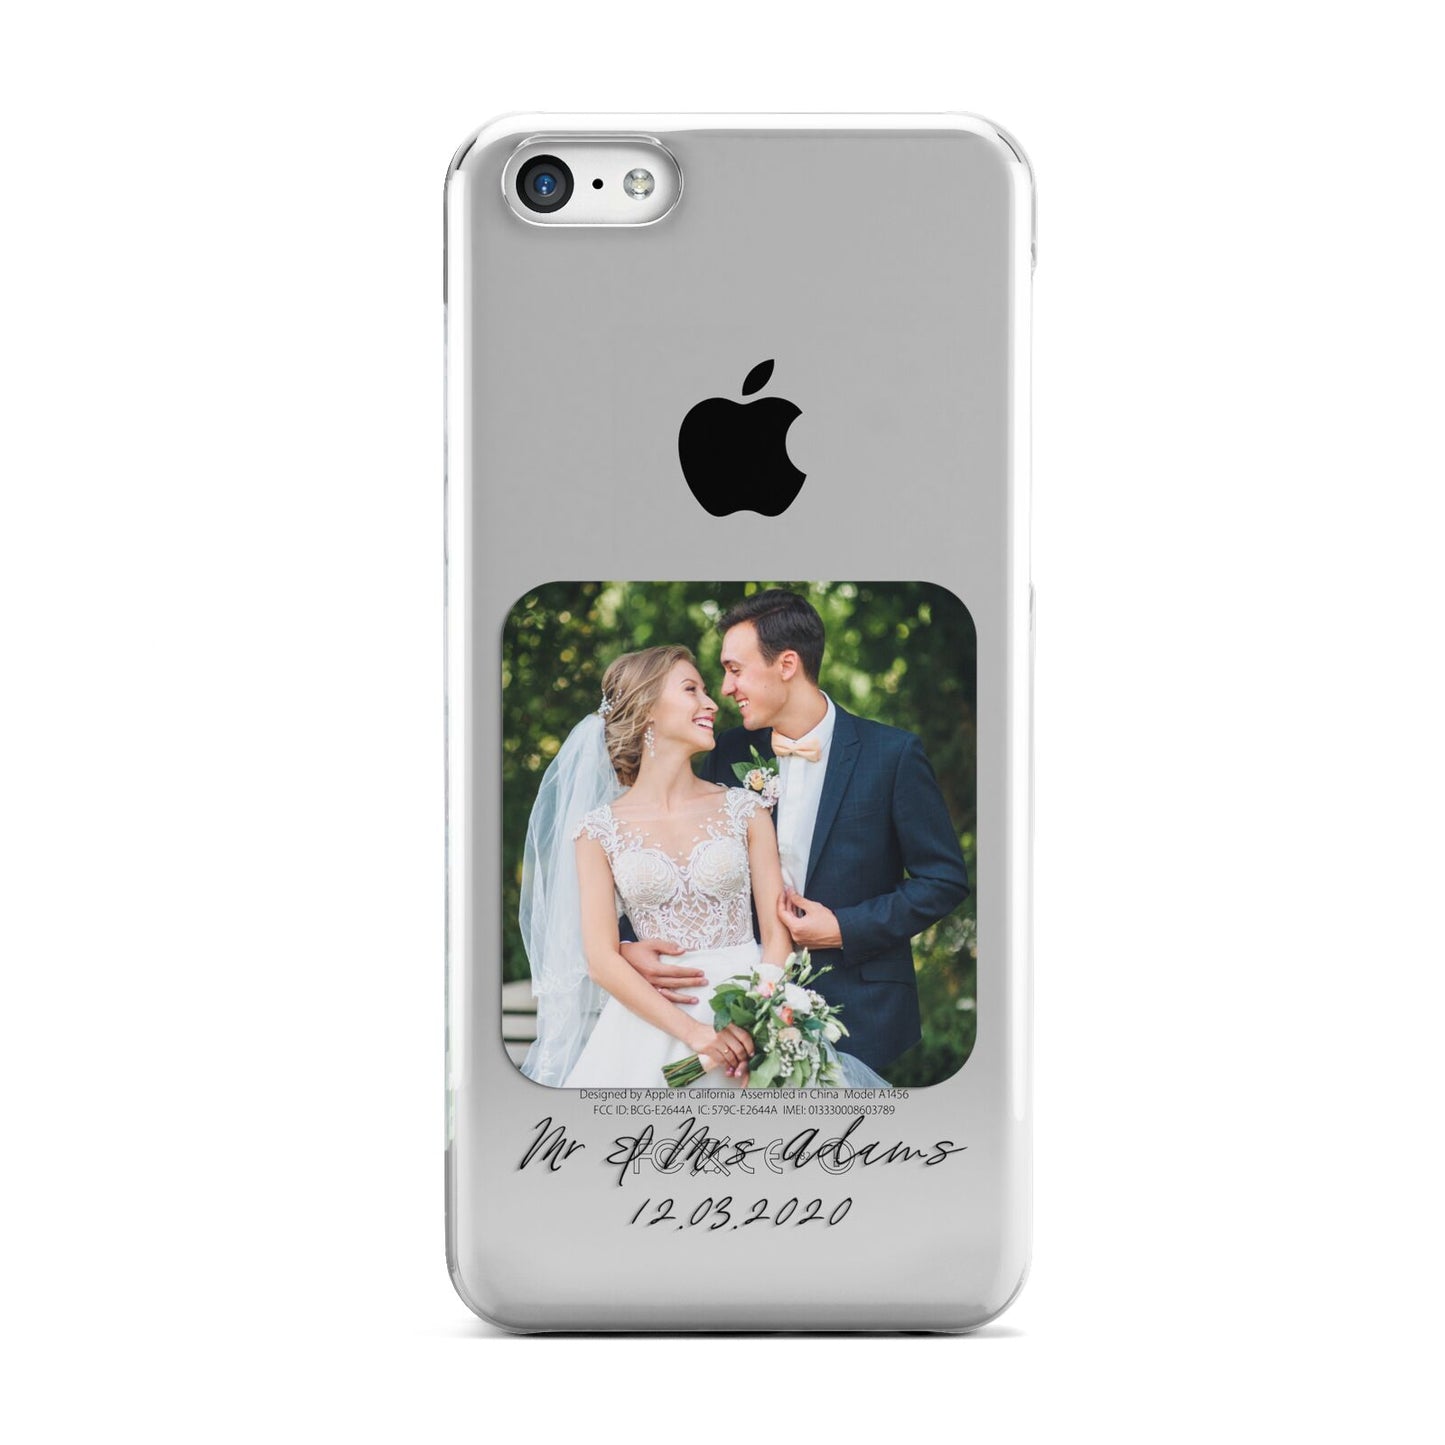 Wedding Photo Upload Keepsake with Text Apple iPhone 5c Case